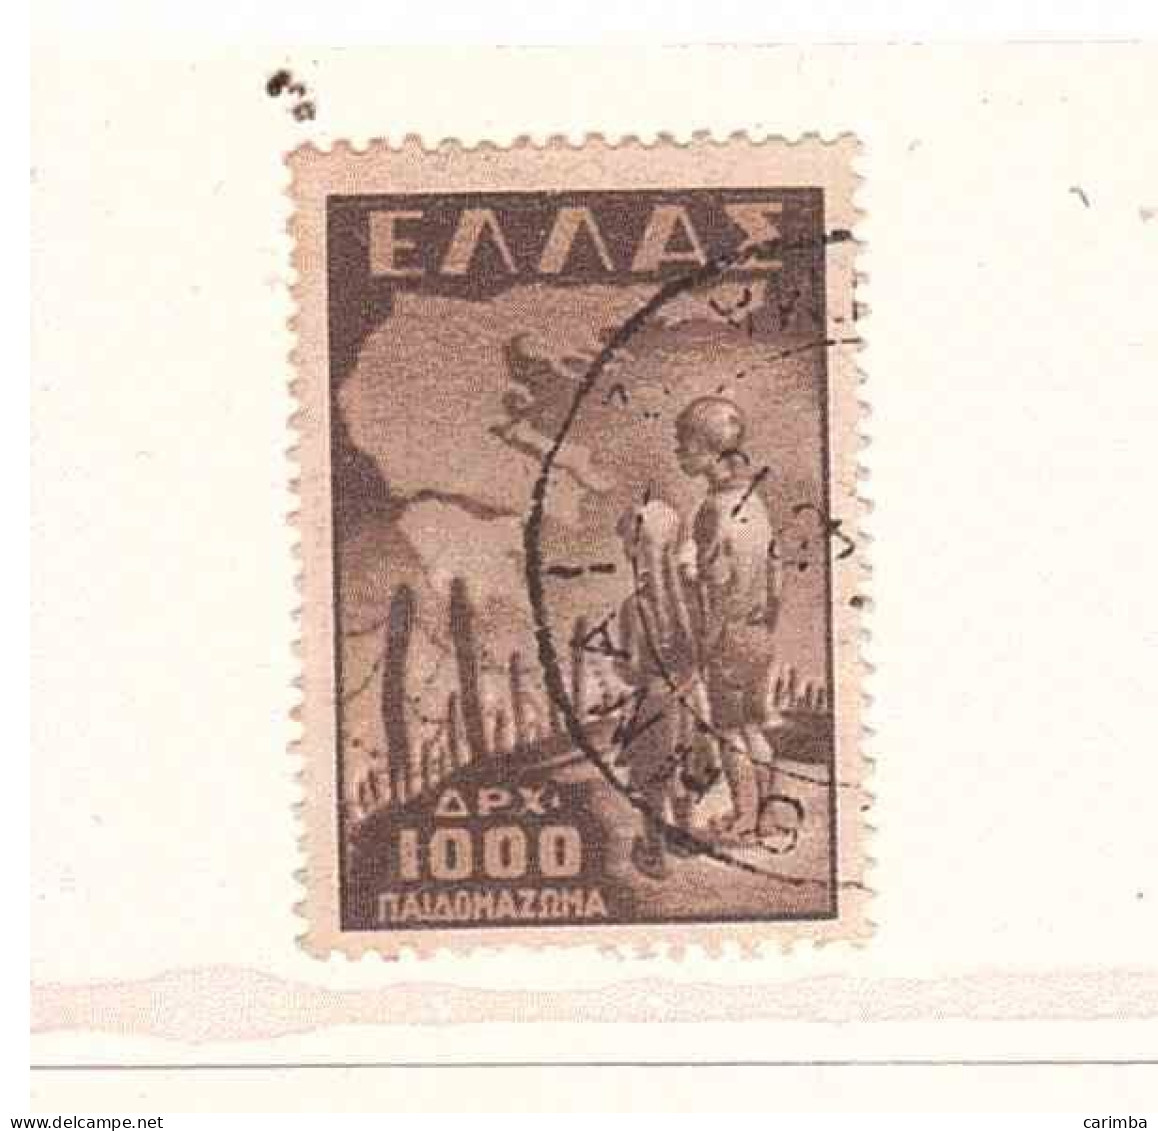 1949 APX 1000 INFANZIA DEPORTATA - Usati